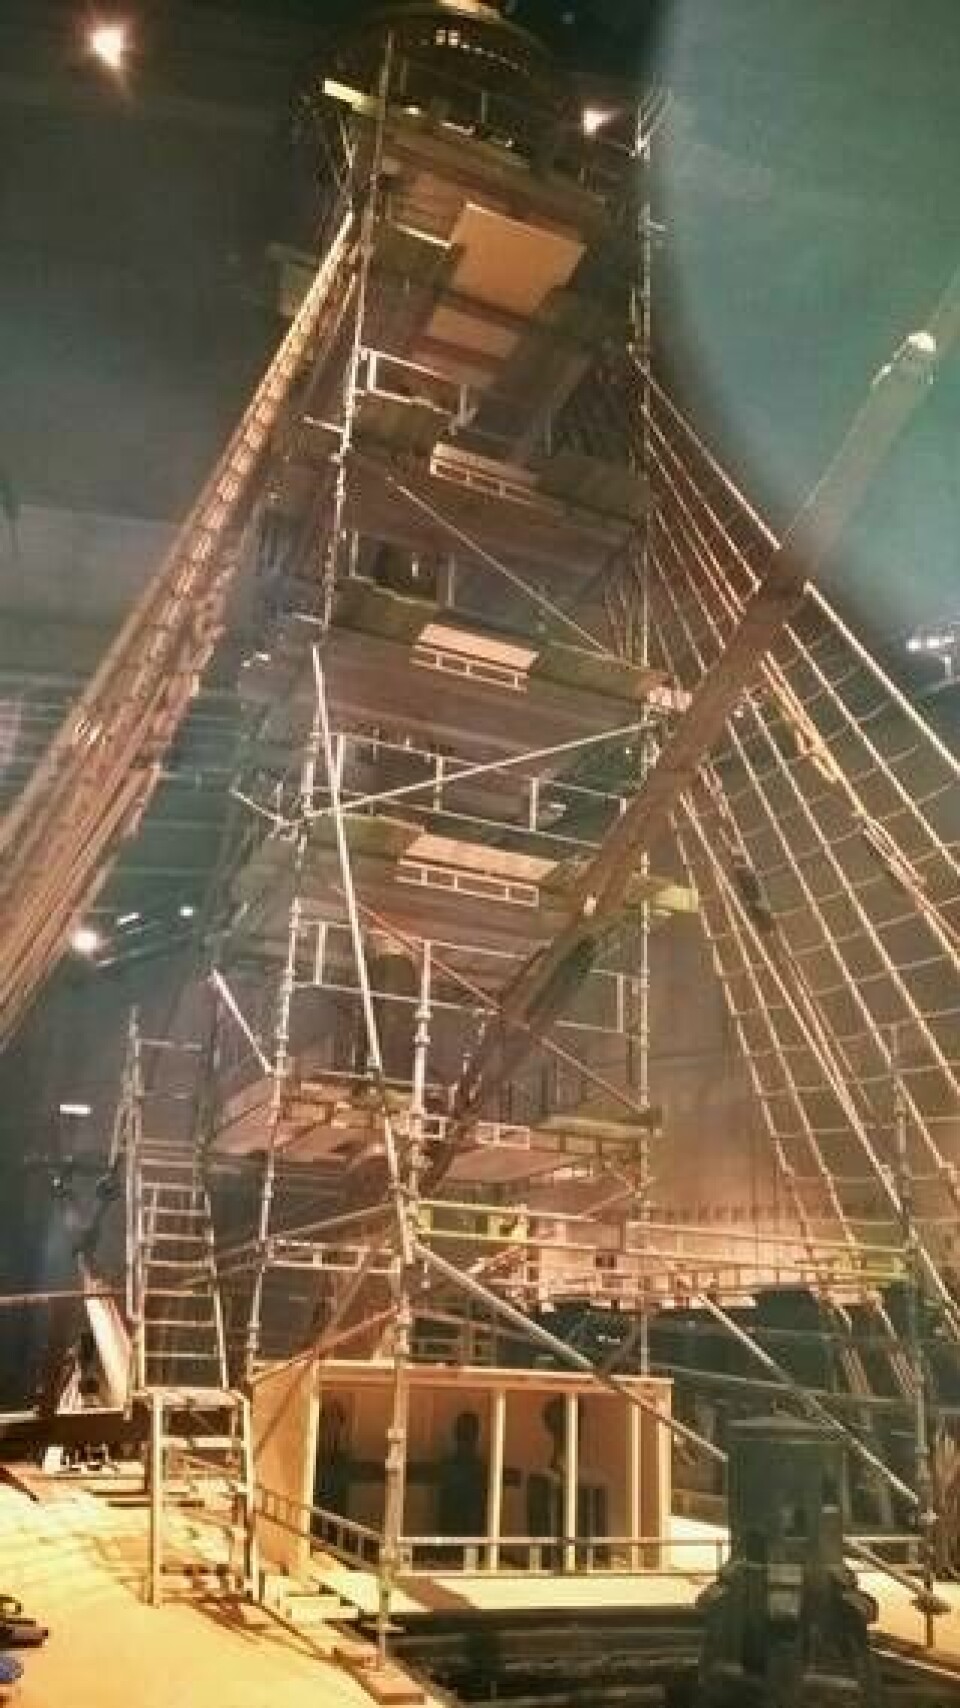 Vasas mast undersöks i jakt på sprickor. Klicka på bilden för en större version.